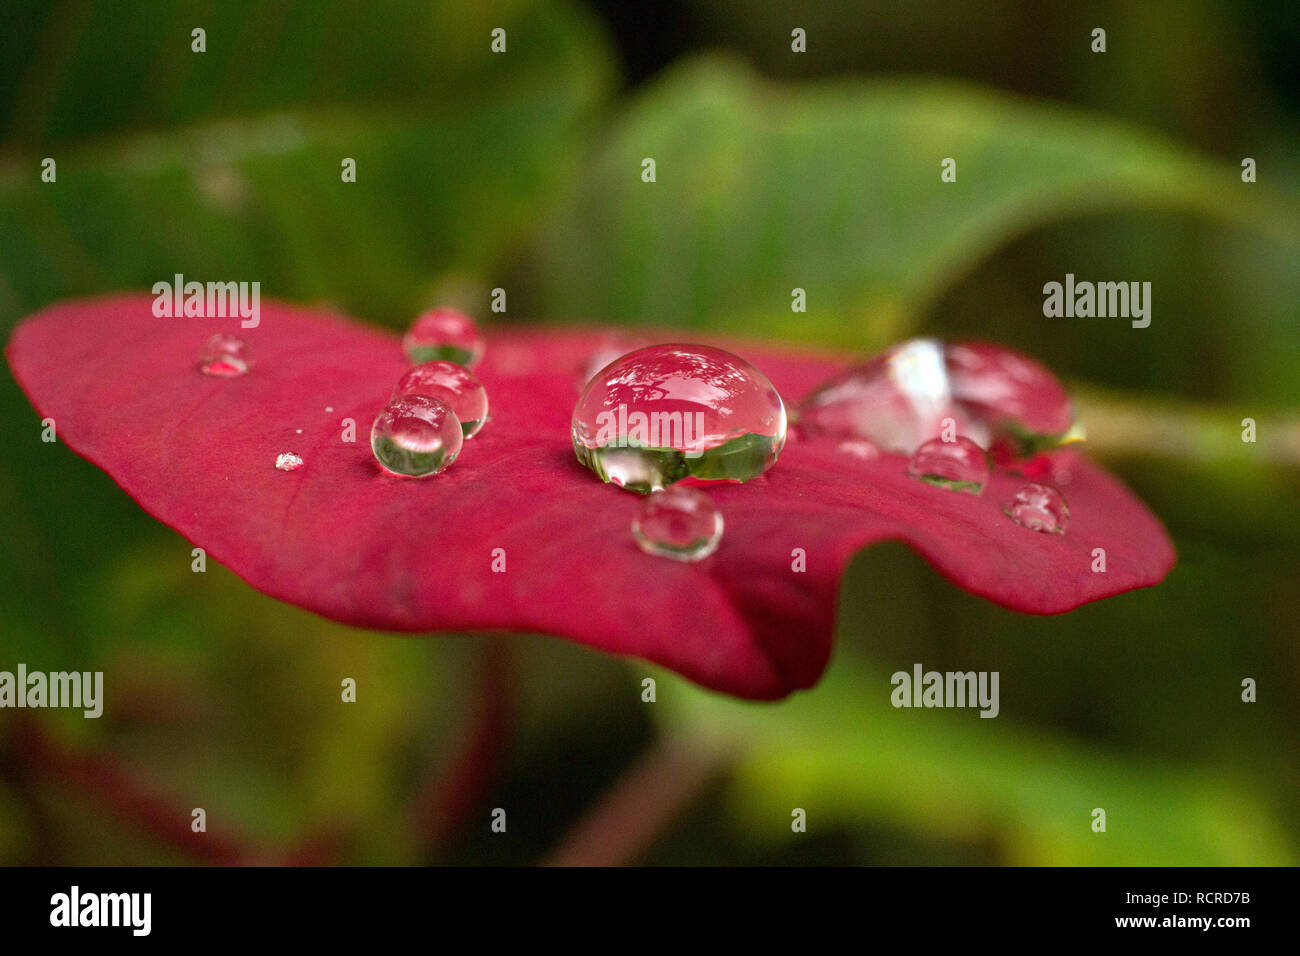 Gotas de agua sobre una hoja roja de poinsettia (Euphorbia pulcherrima), también conocido como la estrella de Navidad, después de la lluvia Foto de stock